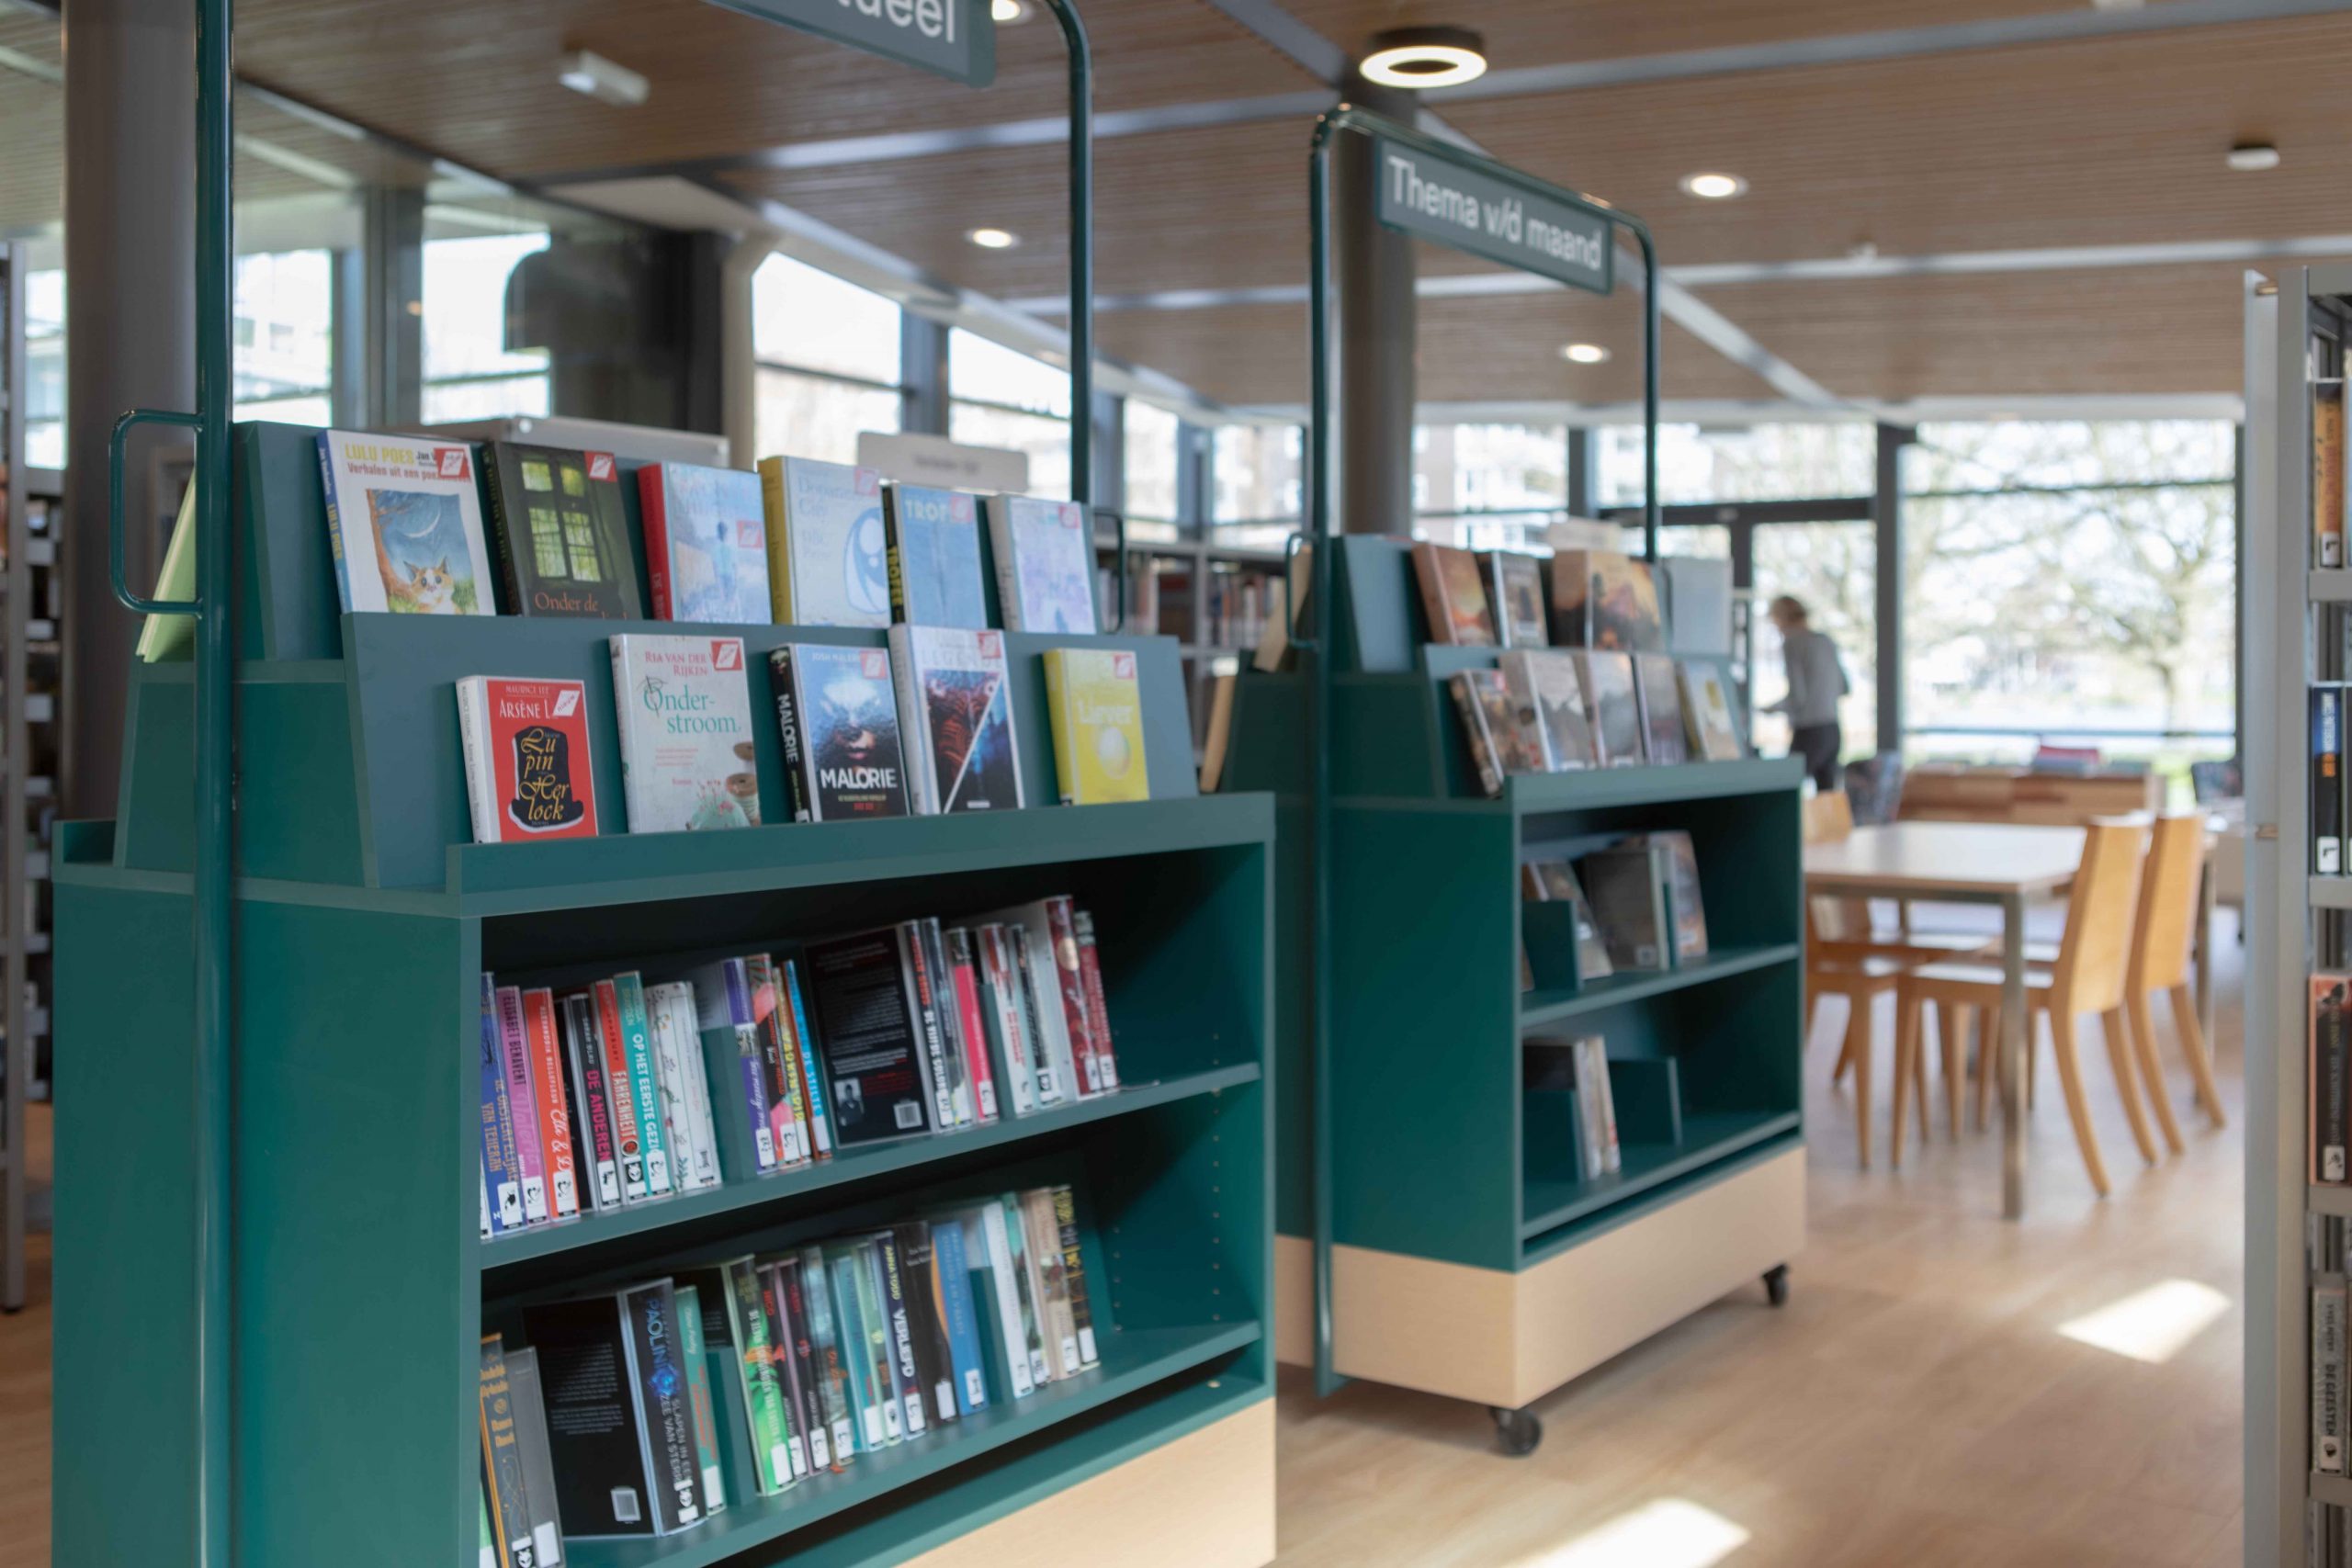 multifunctioneel gebouw cultuur bibliotheek Leiderdorp Interieurontwerp